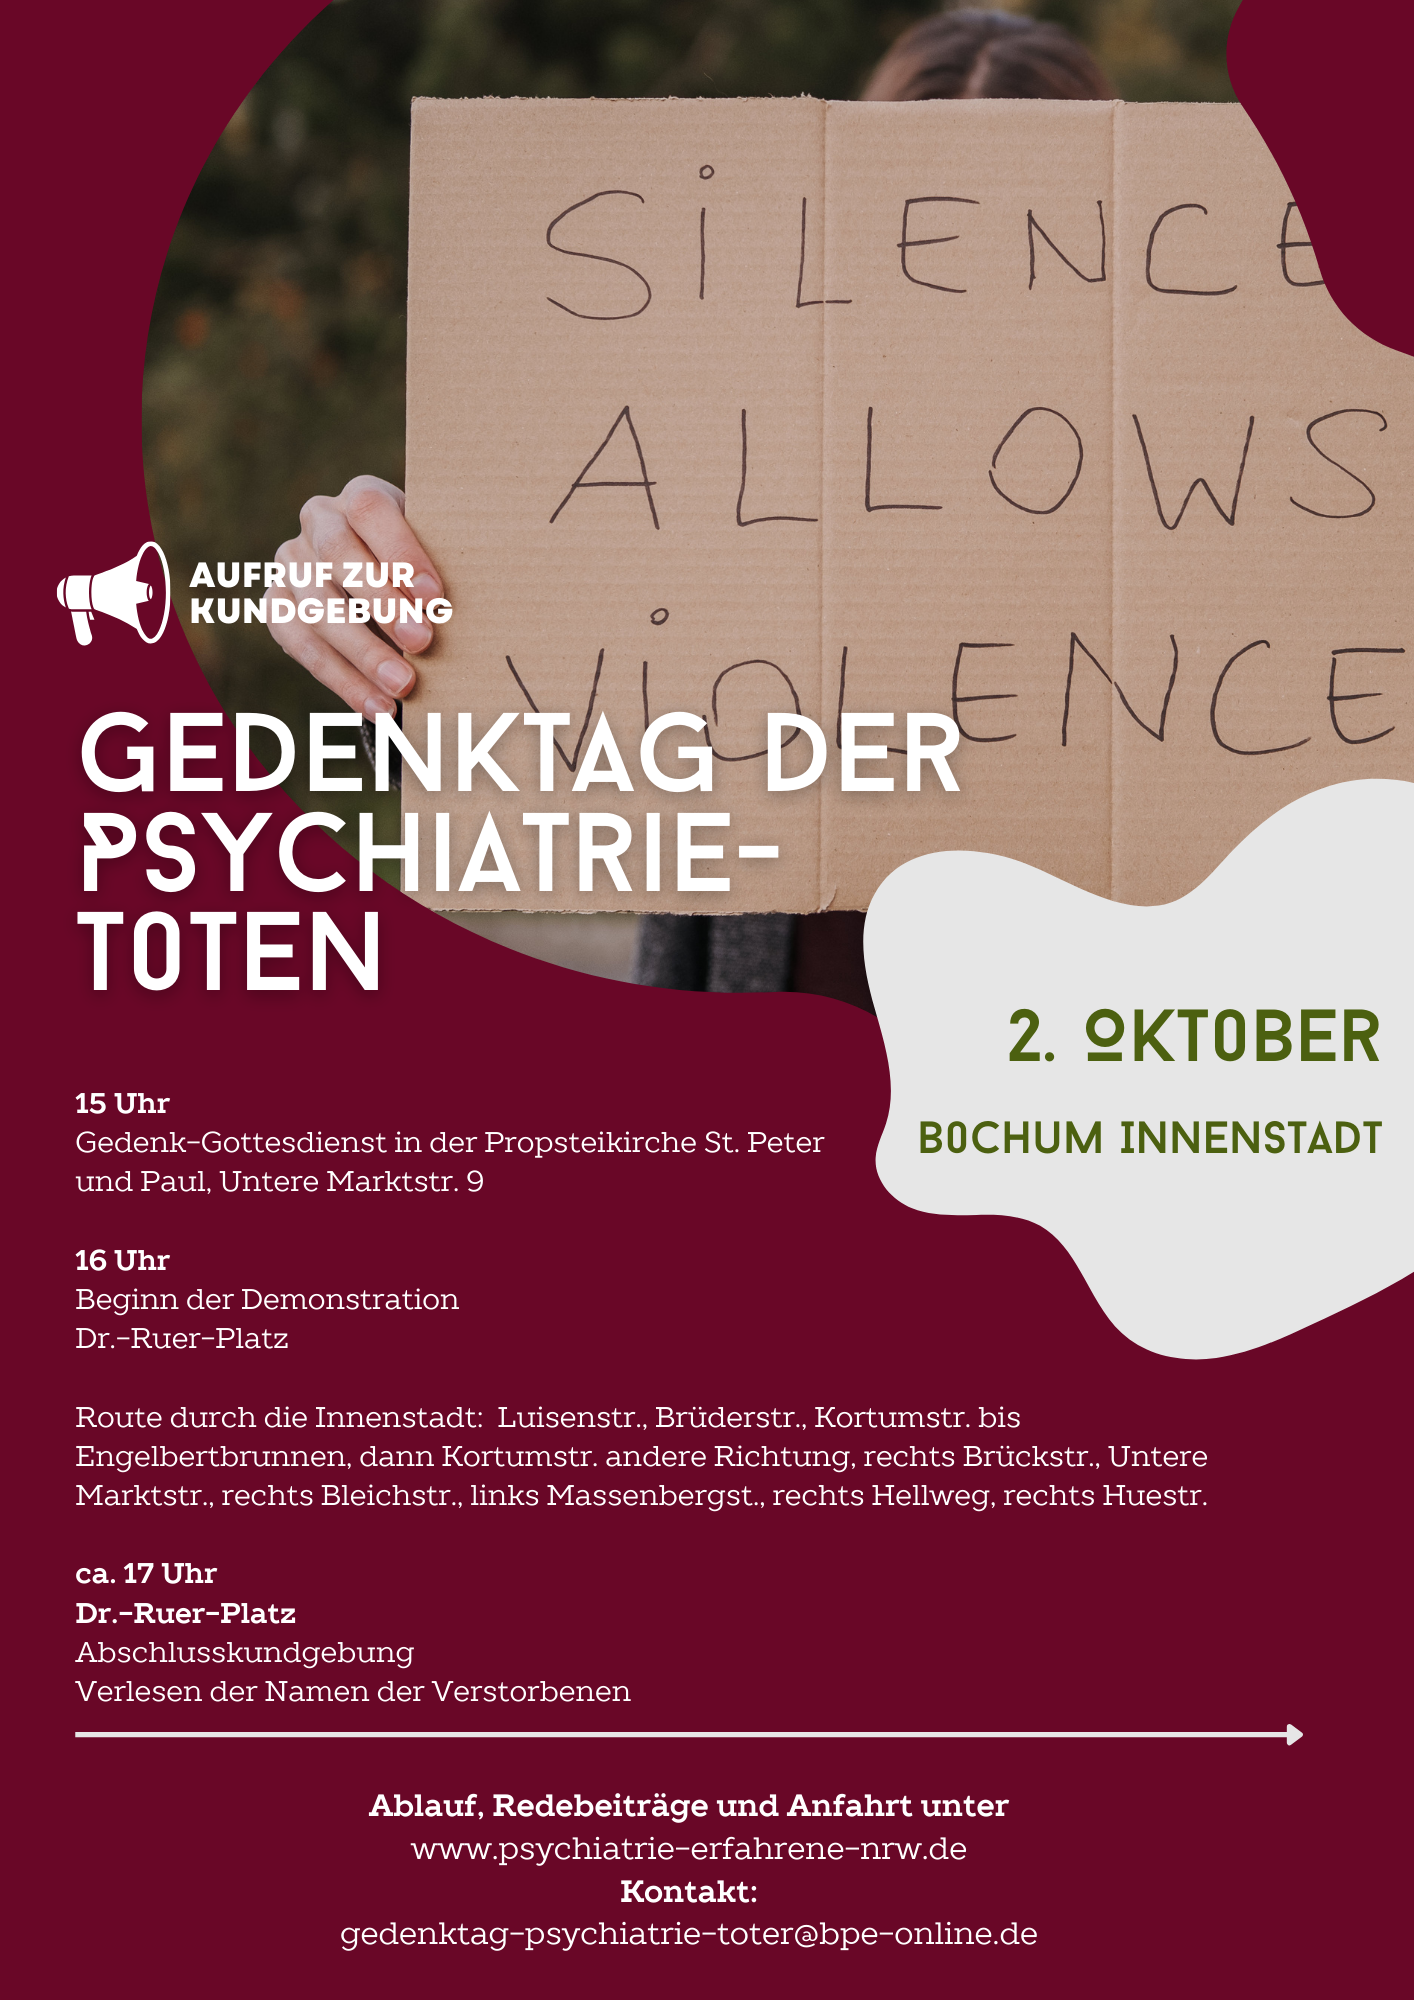 You are currently viewing Aufruf zur Kundgebung in Bochum zum Gedenktag der Psychiatrie-Toten